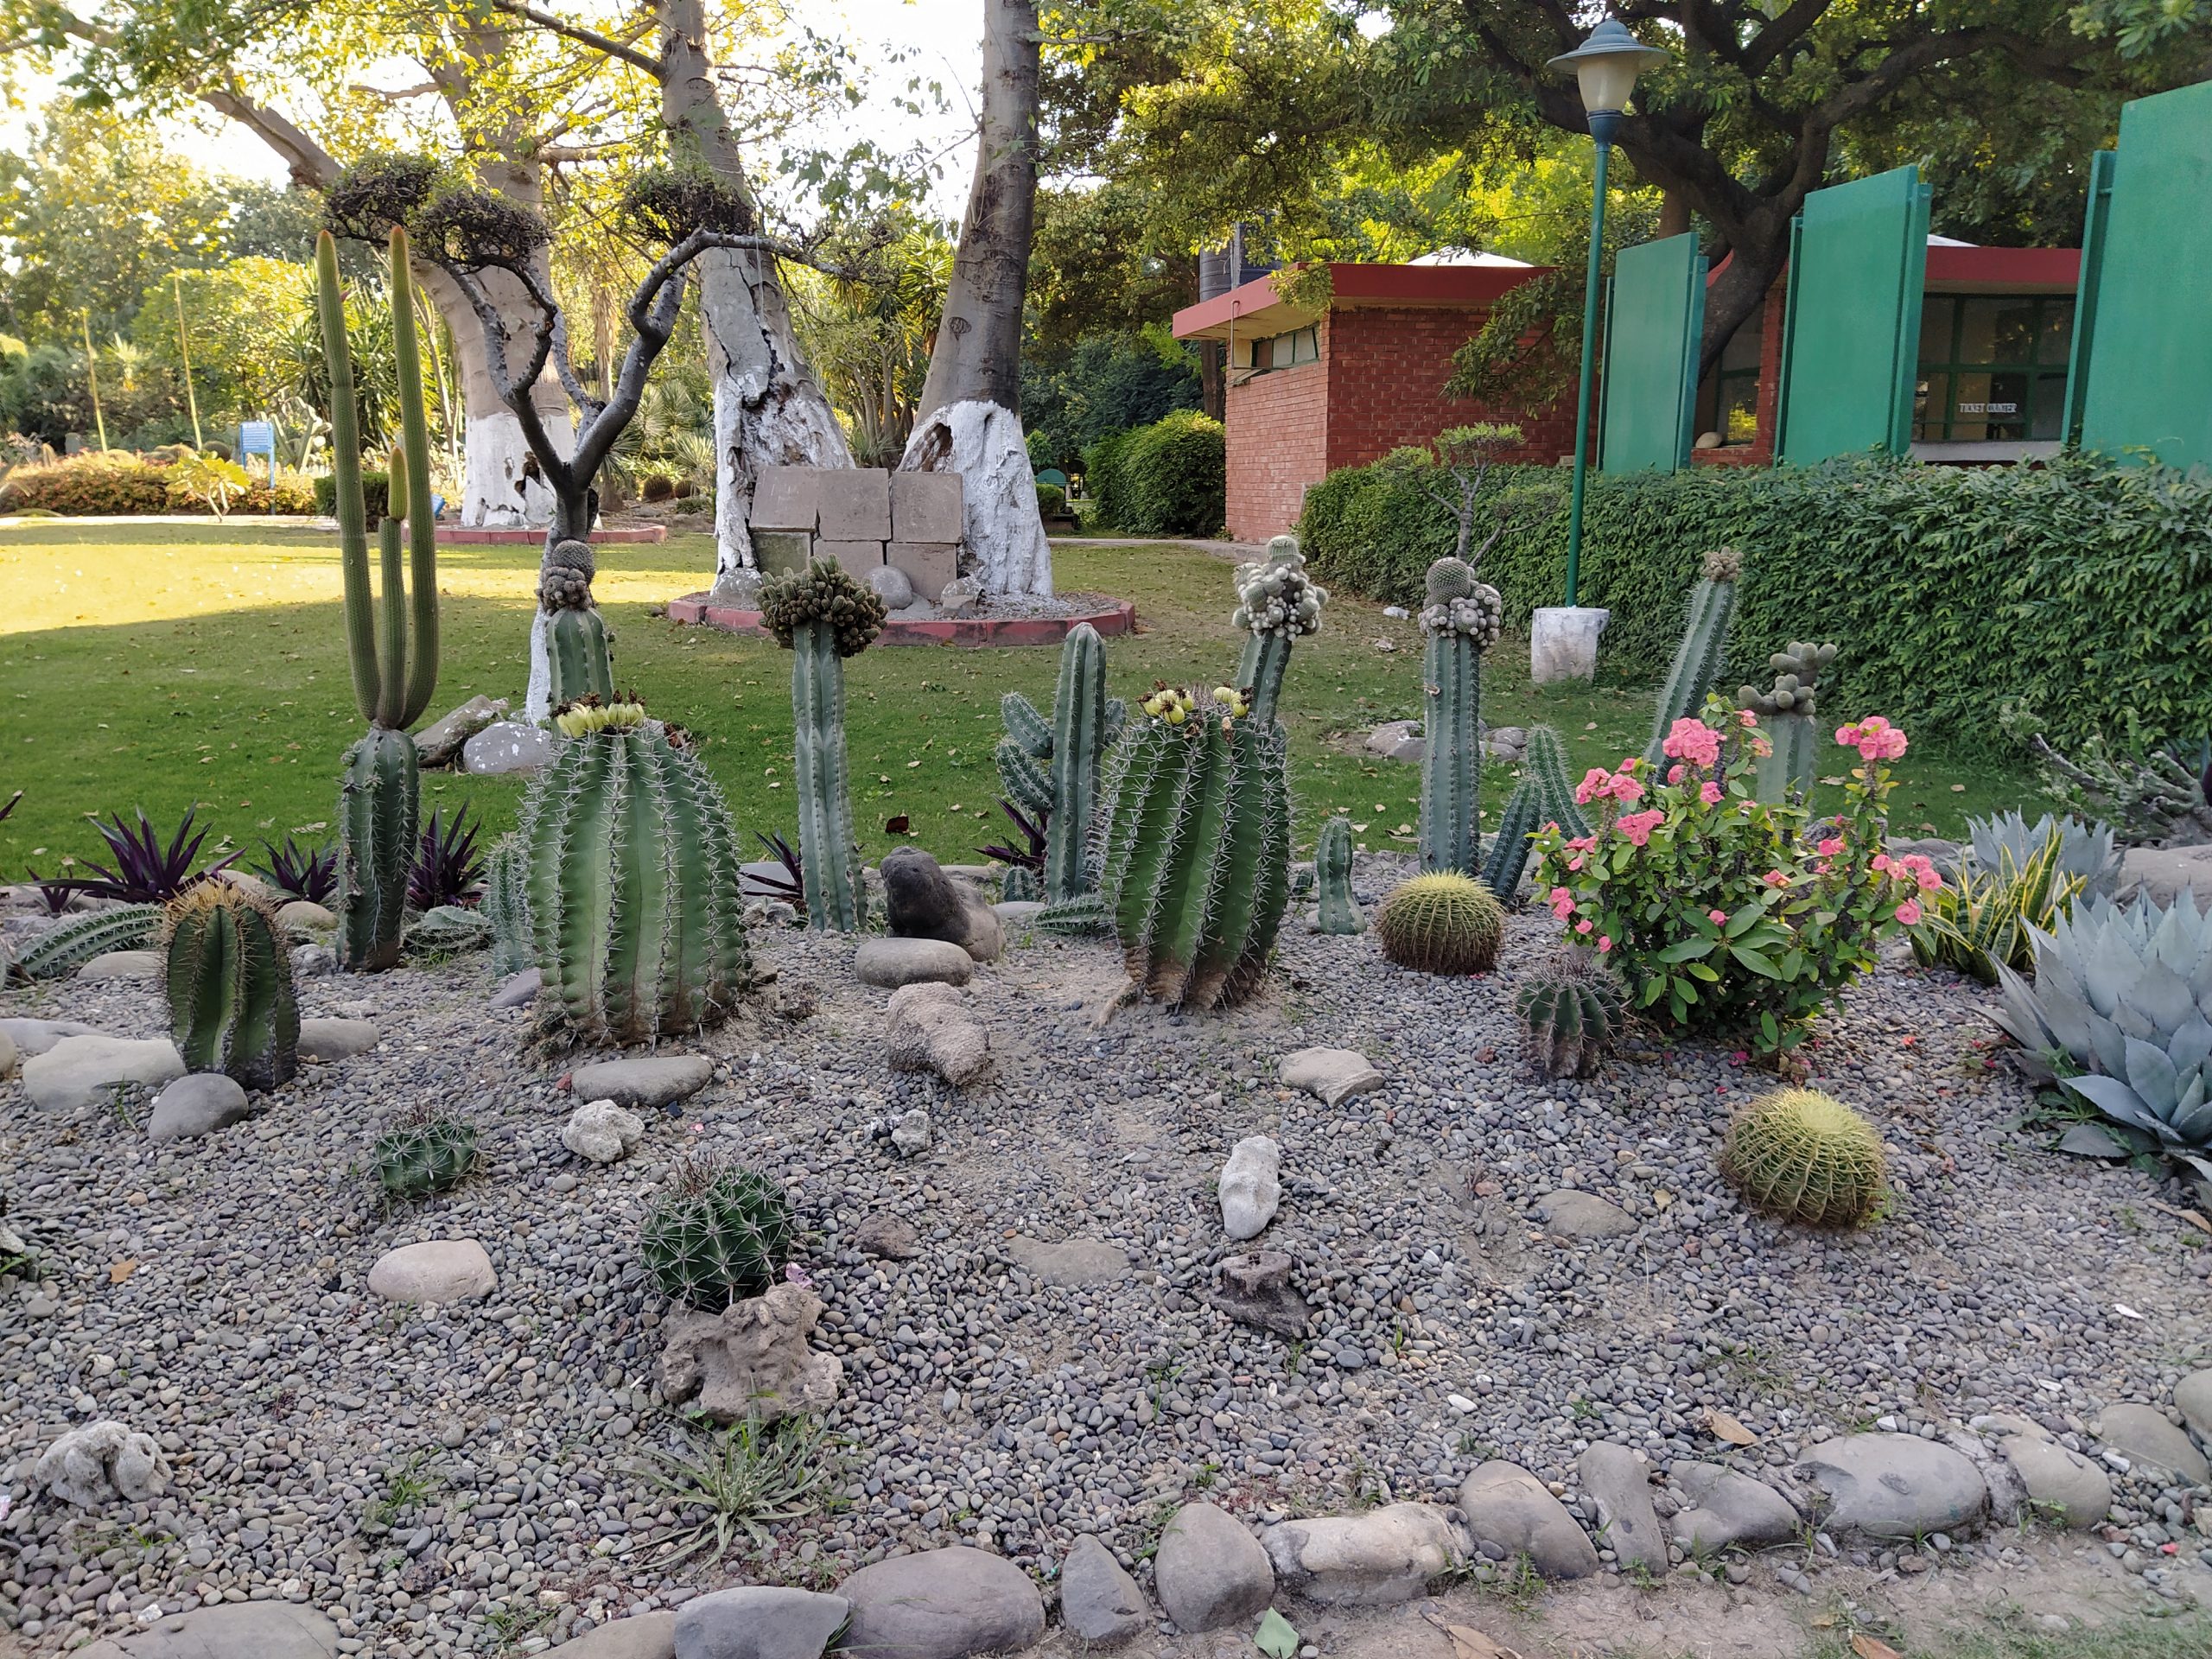 cactus grown in a garden